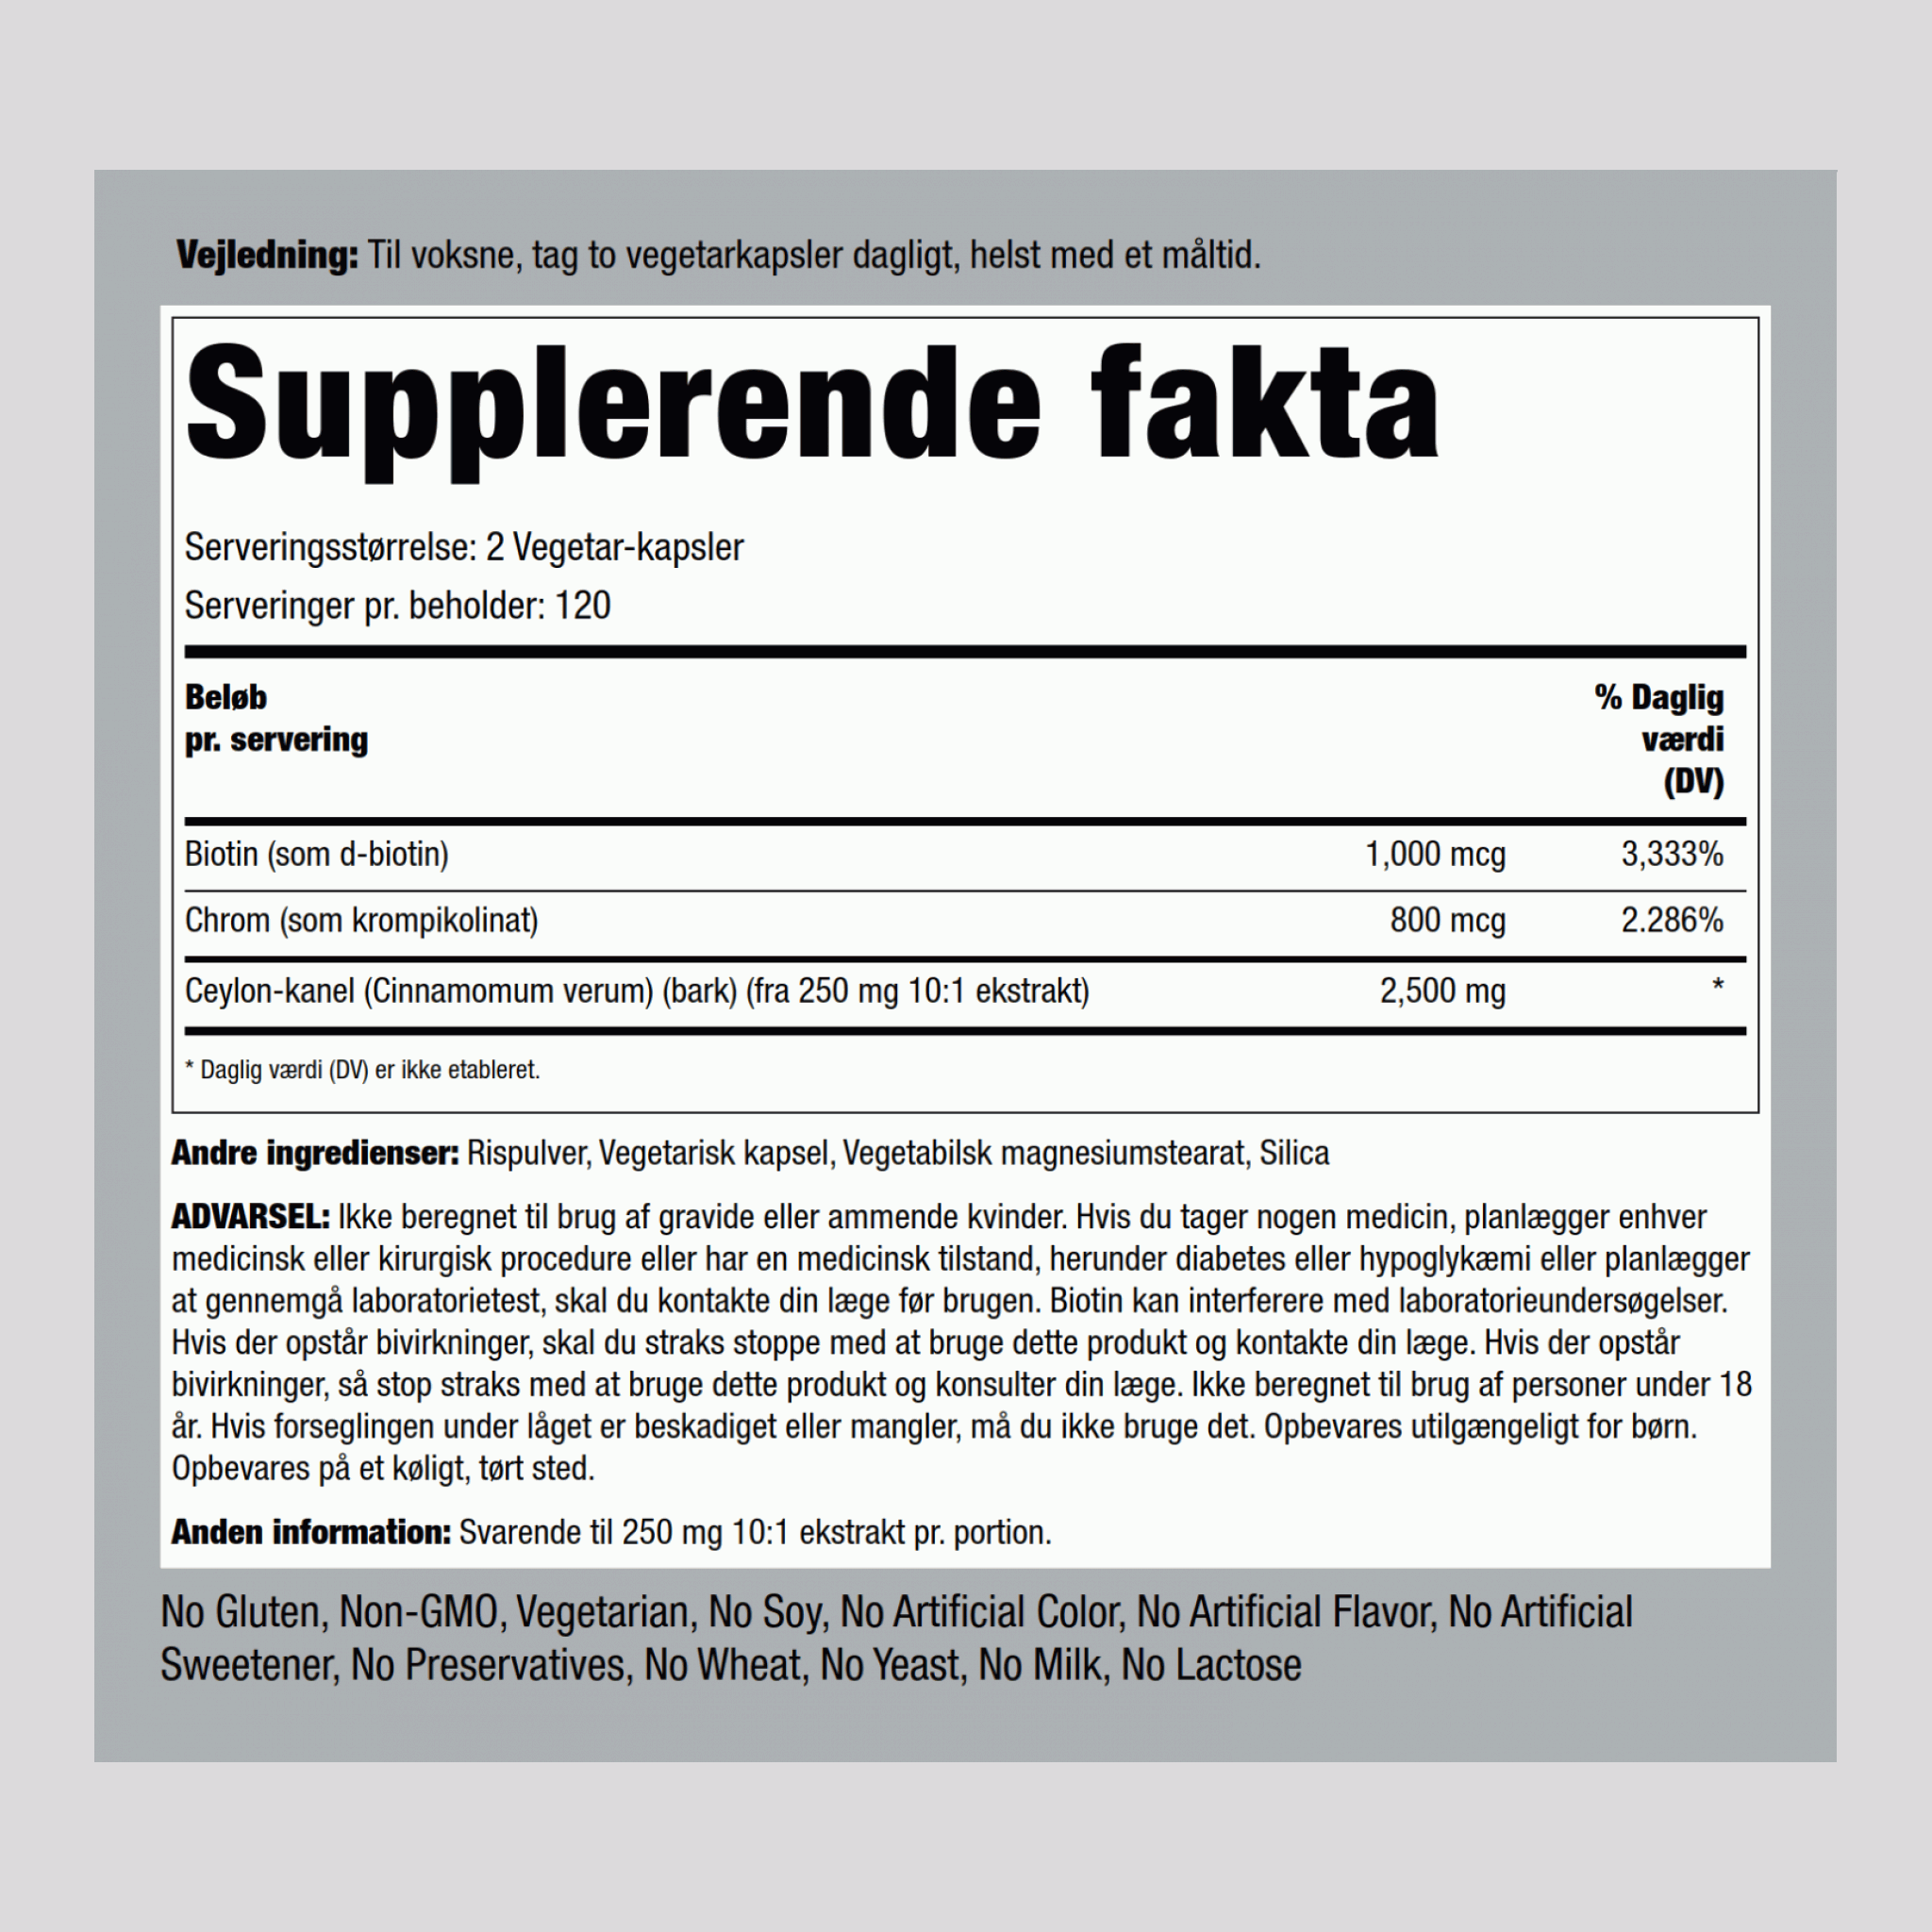 Super Cinnamon (Kanel) Complex m/krom og biotin 2500 mg (pr. dosering) 240 Vegetar-kapsler     